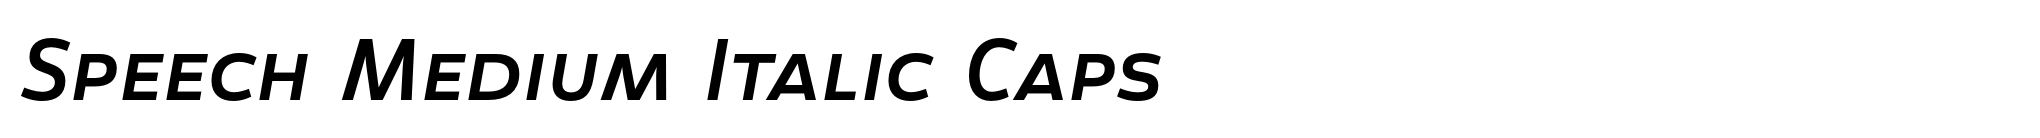 Speech Medium Italic Caps image